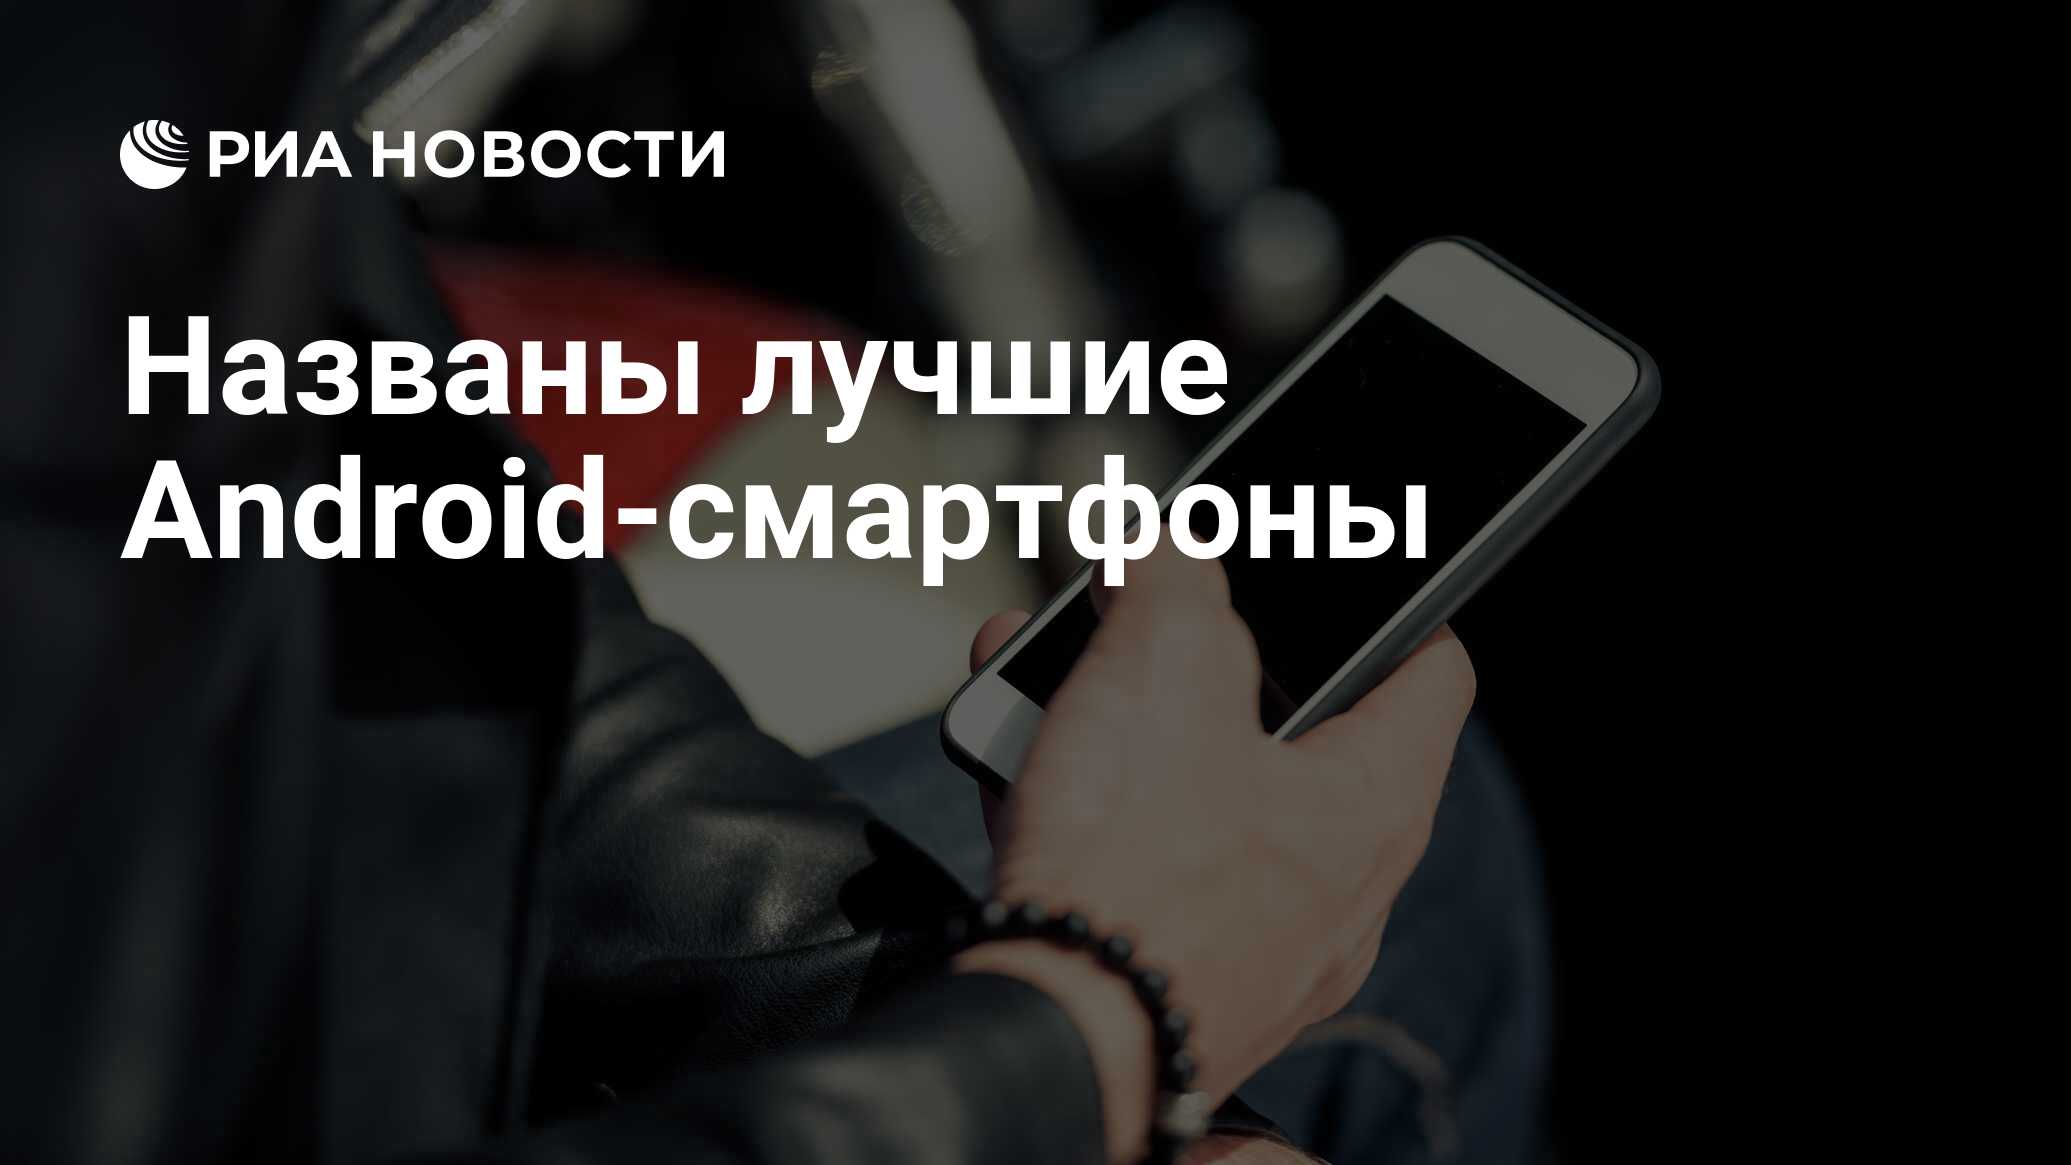 Названы лучшие Android-смартфоны — РИА Новости, 29.12.2020